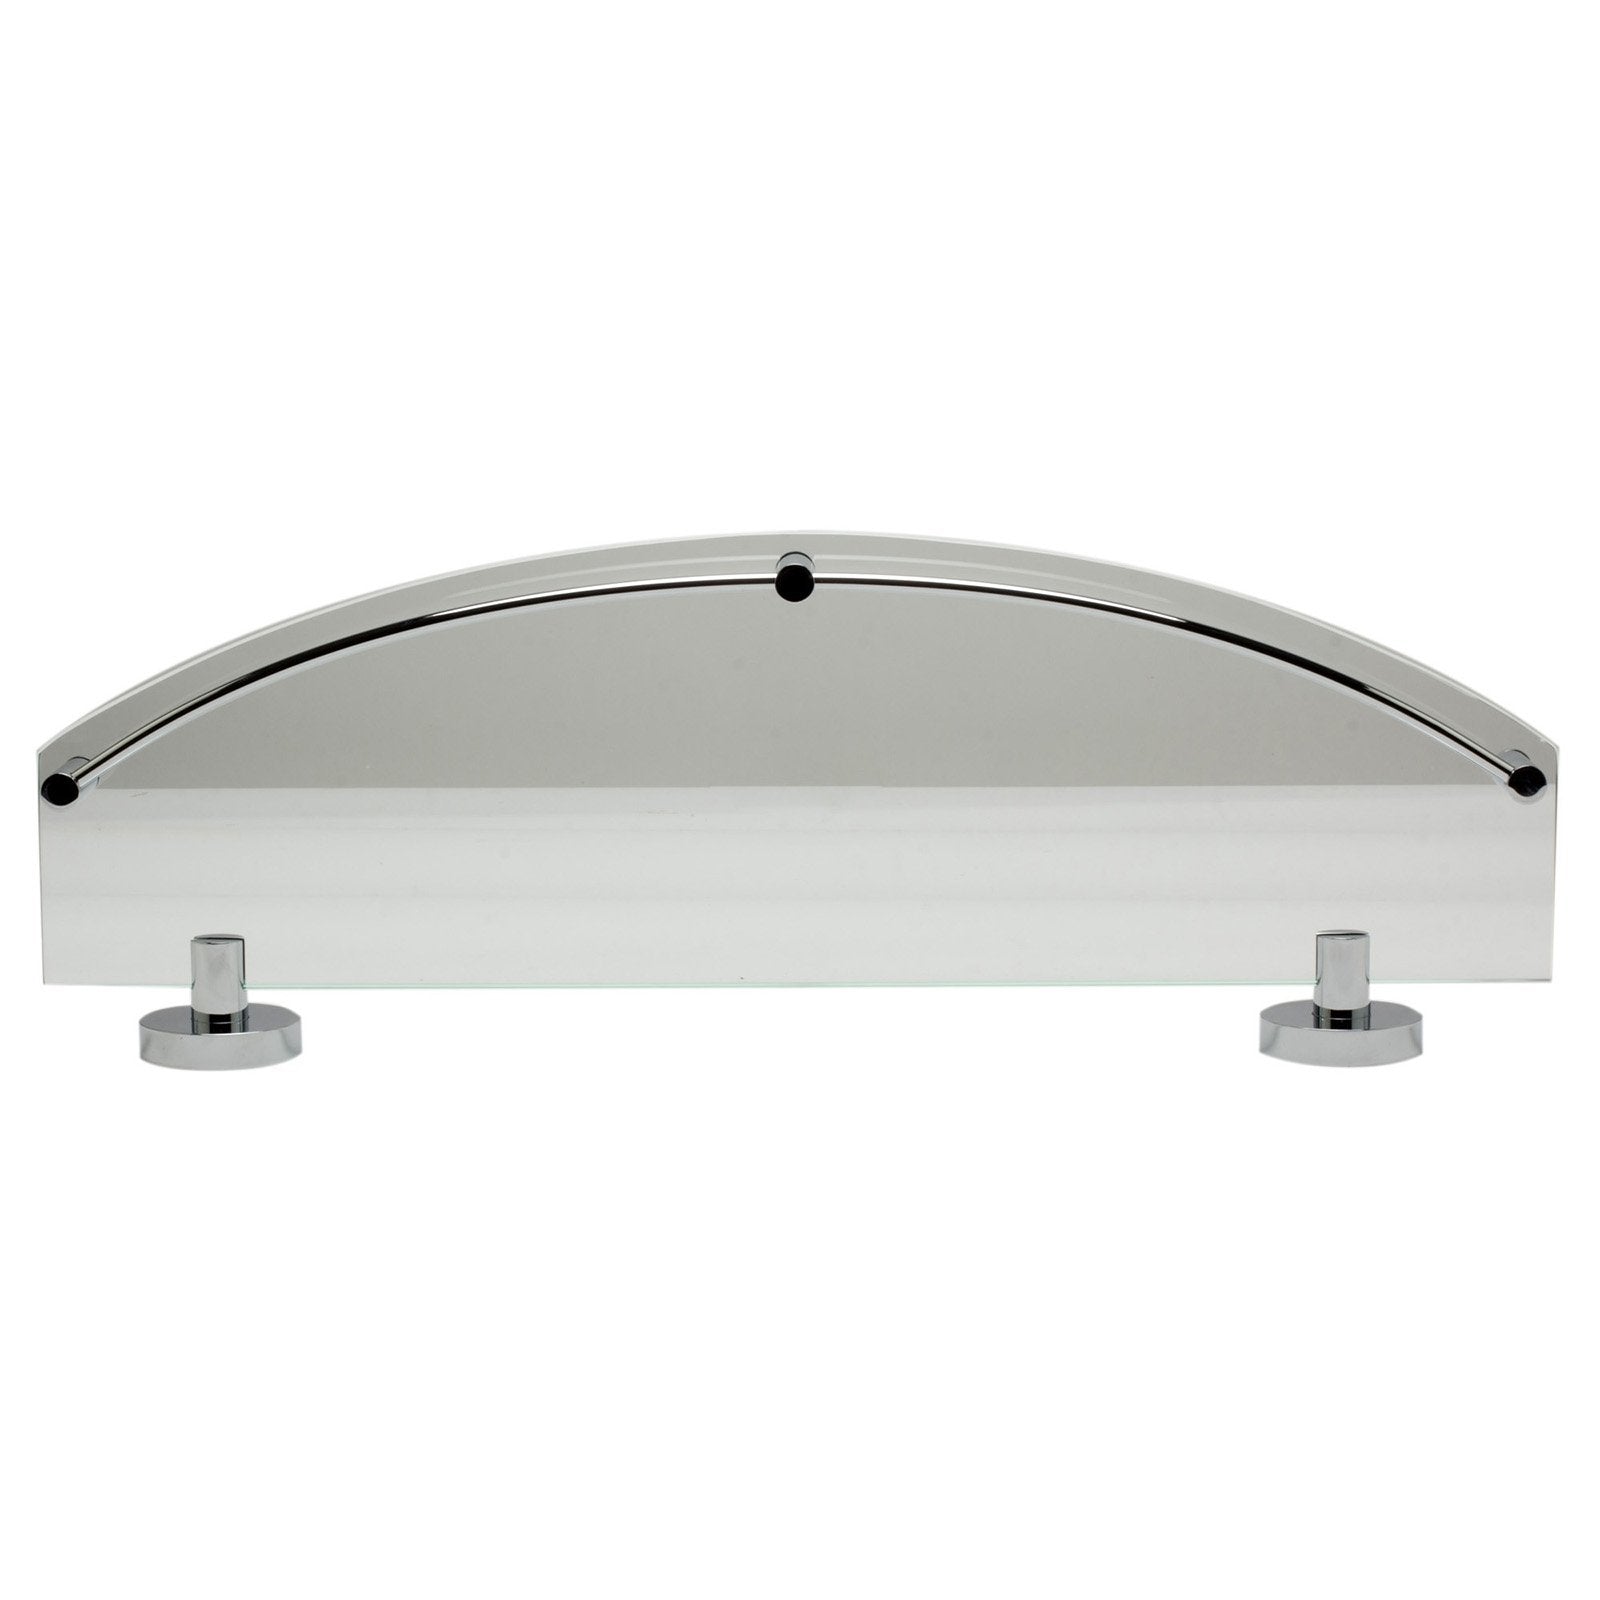 Polished Chrome Wall Mounted Double Glass Shower Shelf - Luxury